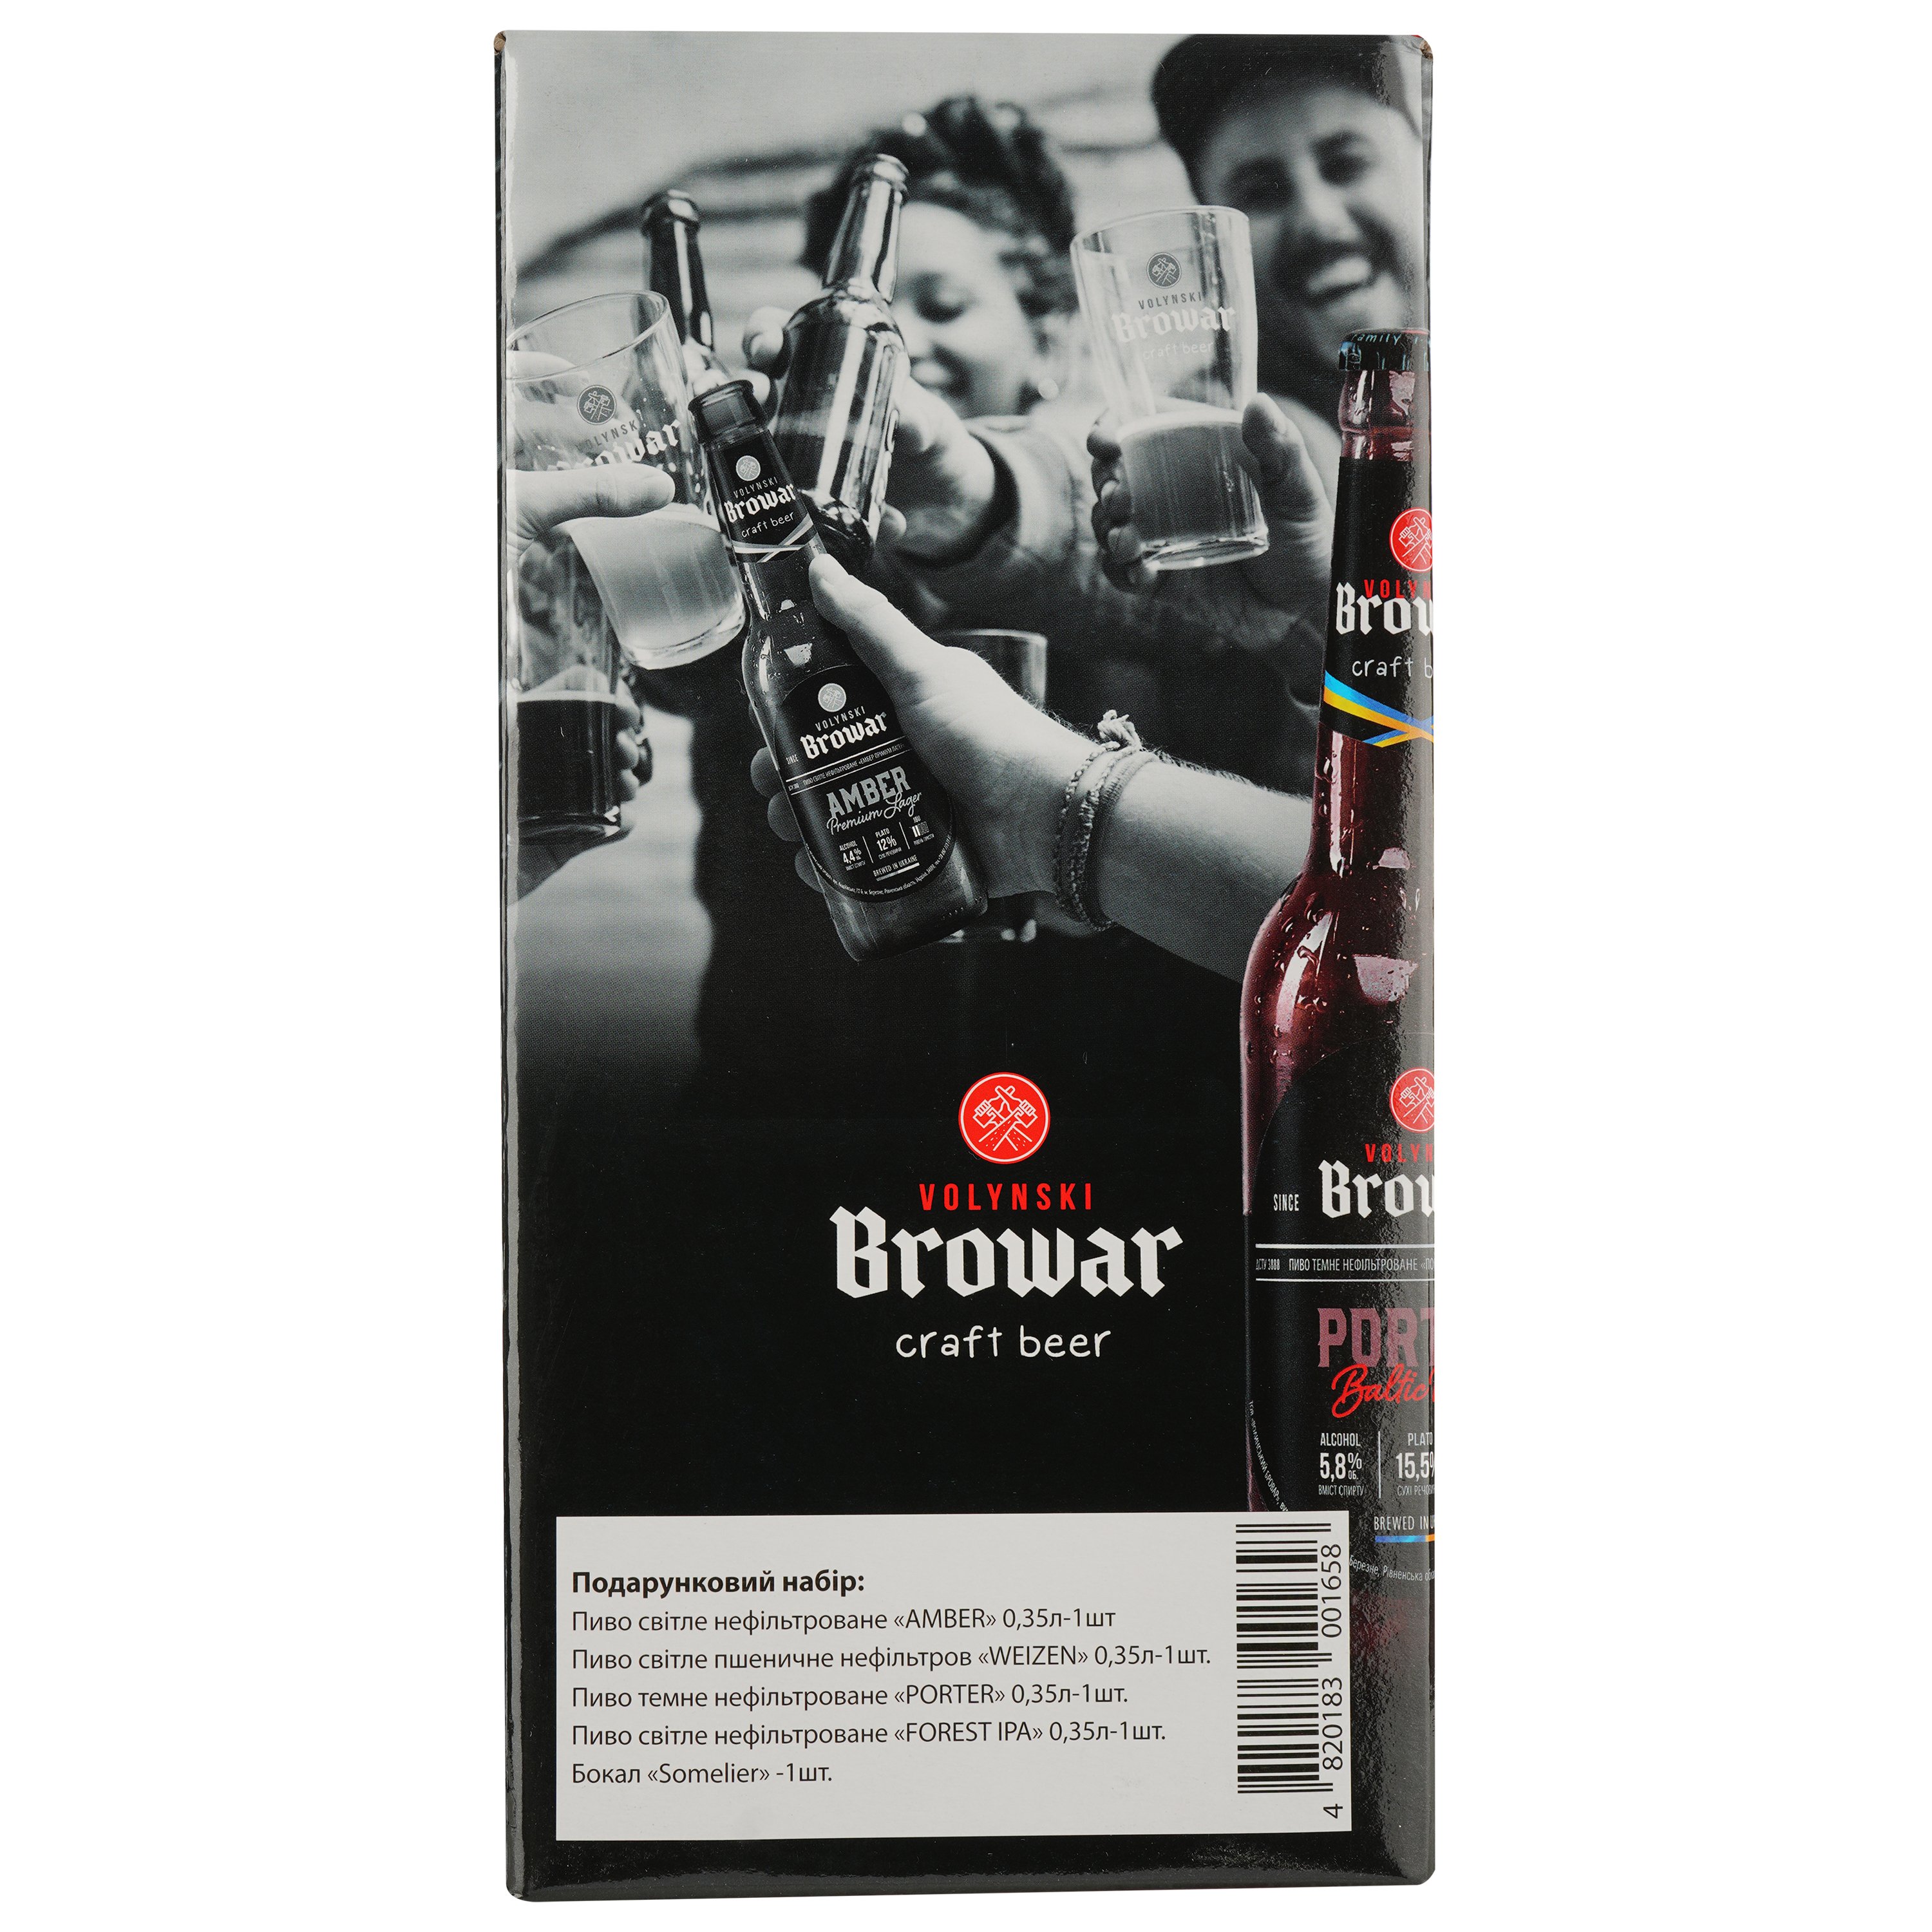 Подарочный набор пива Volynski Browar, 3,8-5,8%, 1,4 л (4 шт. по 0,35 л) + Бокал Somelier, 0,4 л - фото 8